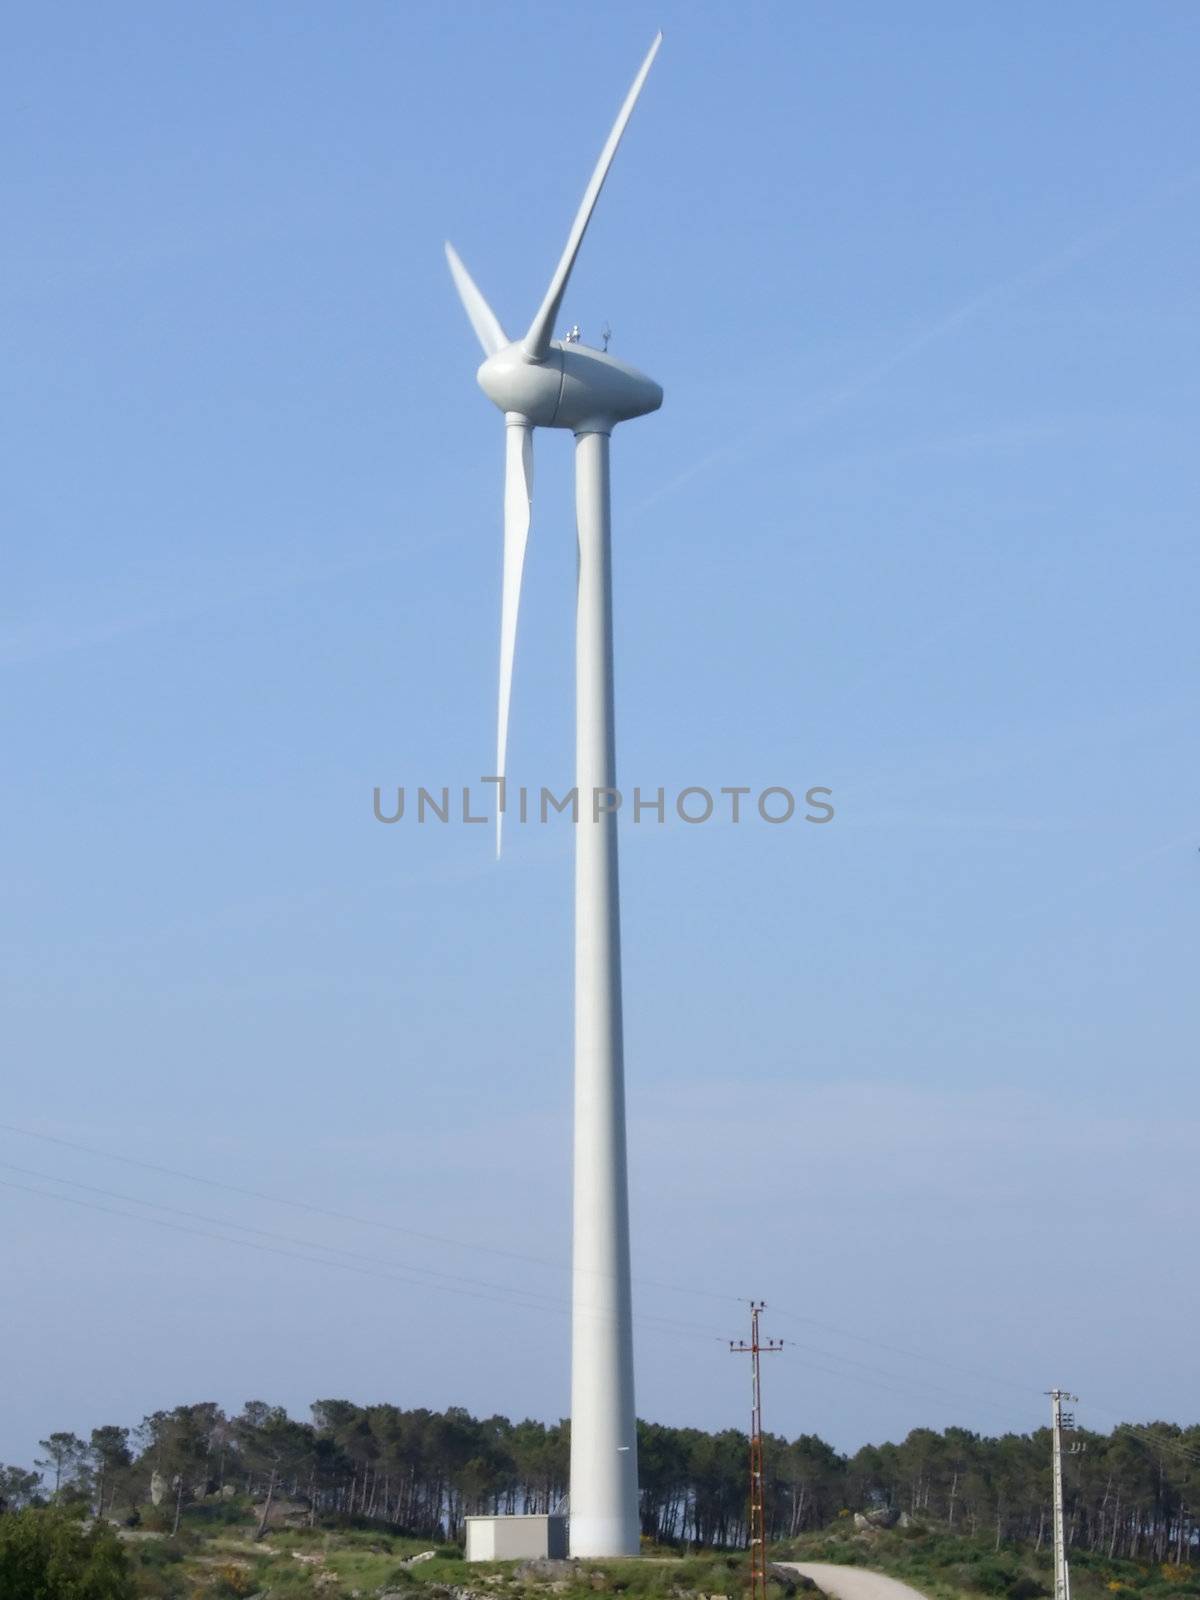 Wind power by PauloResende